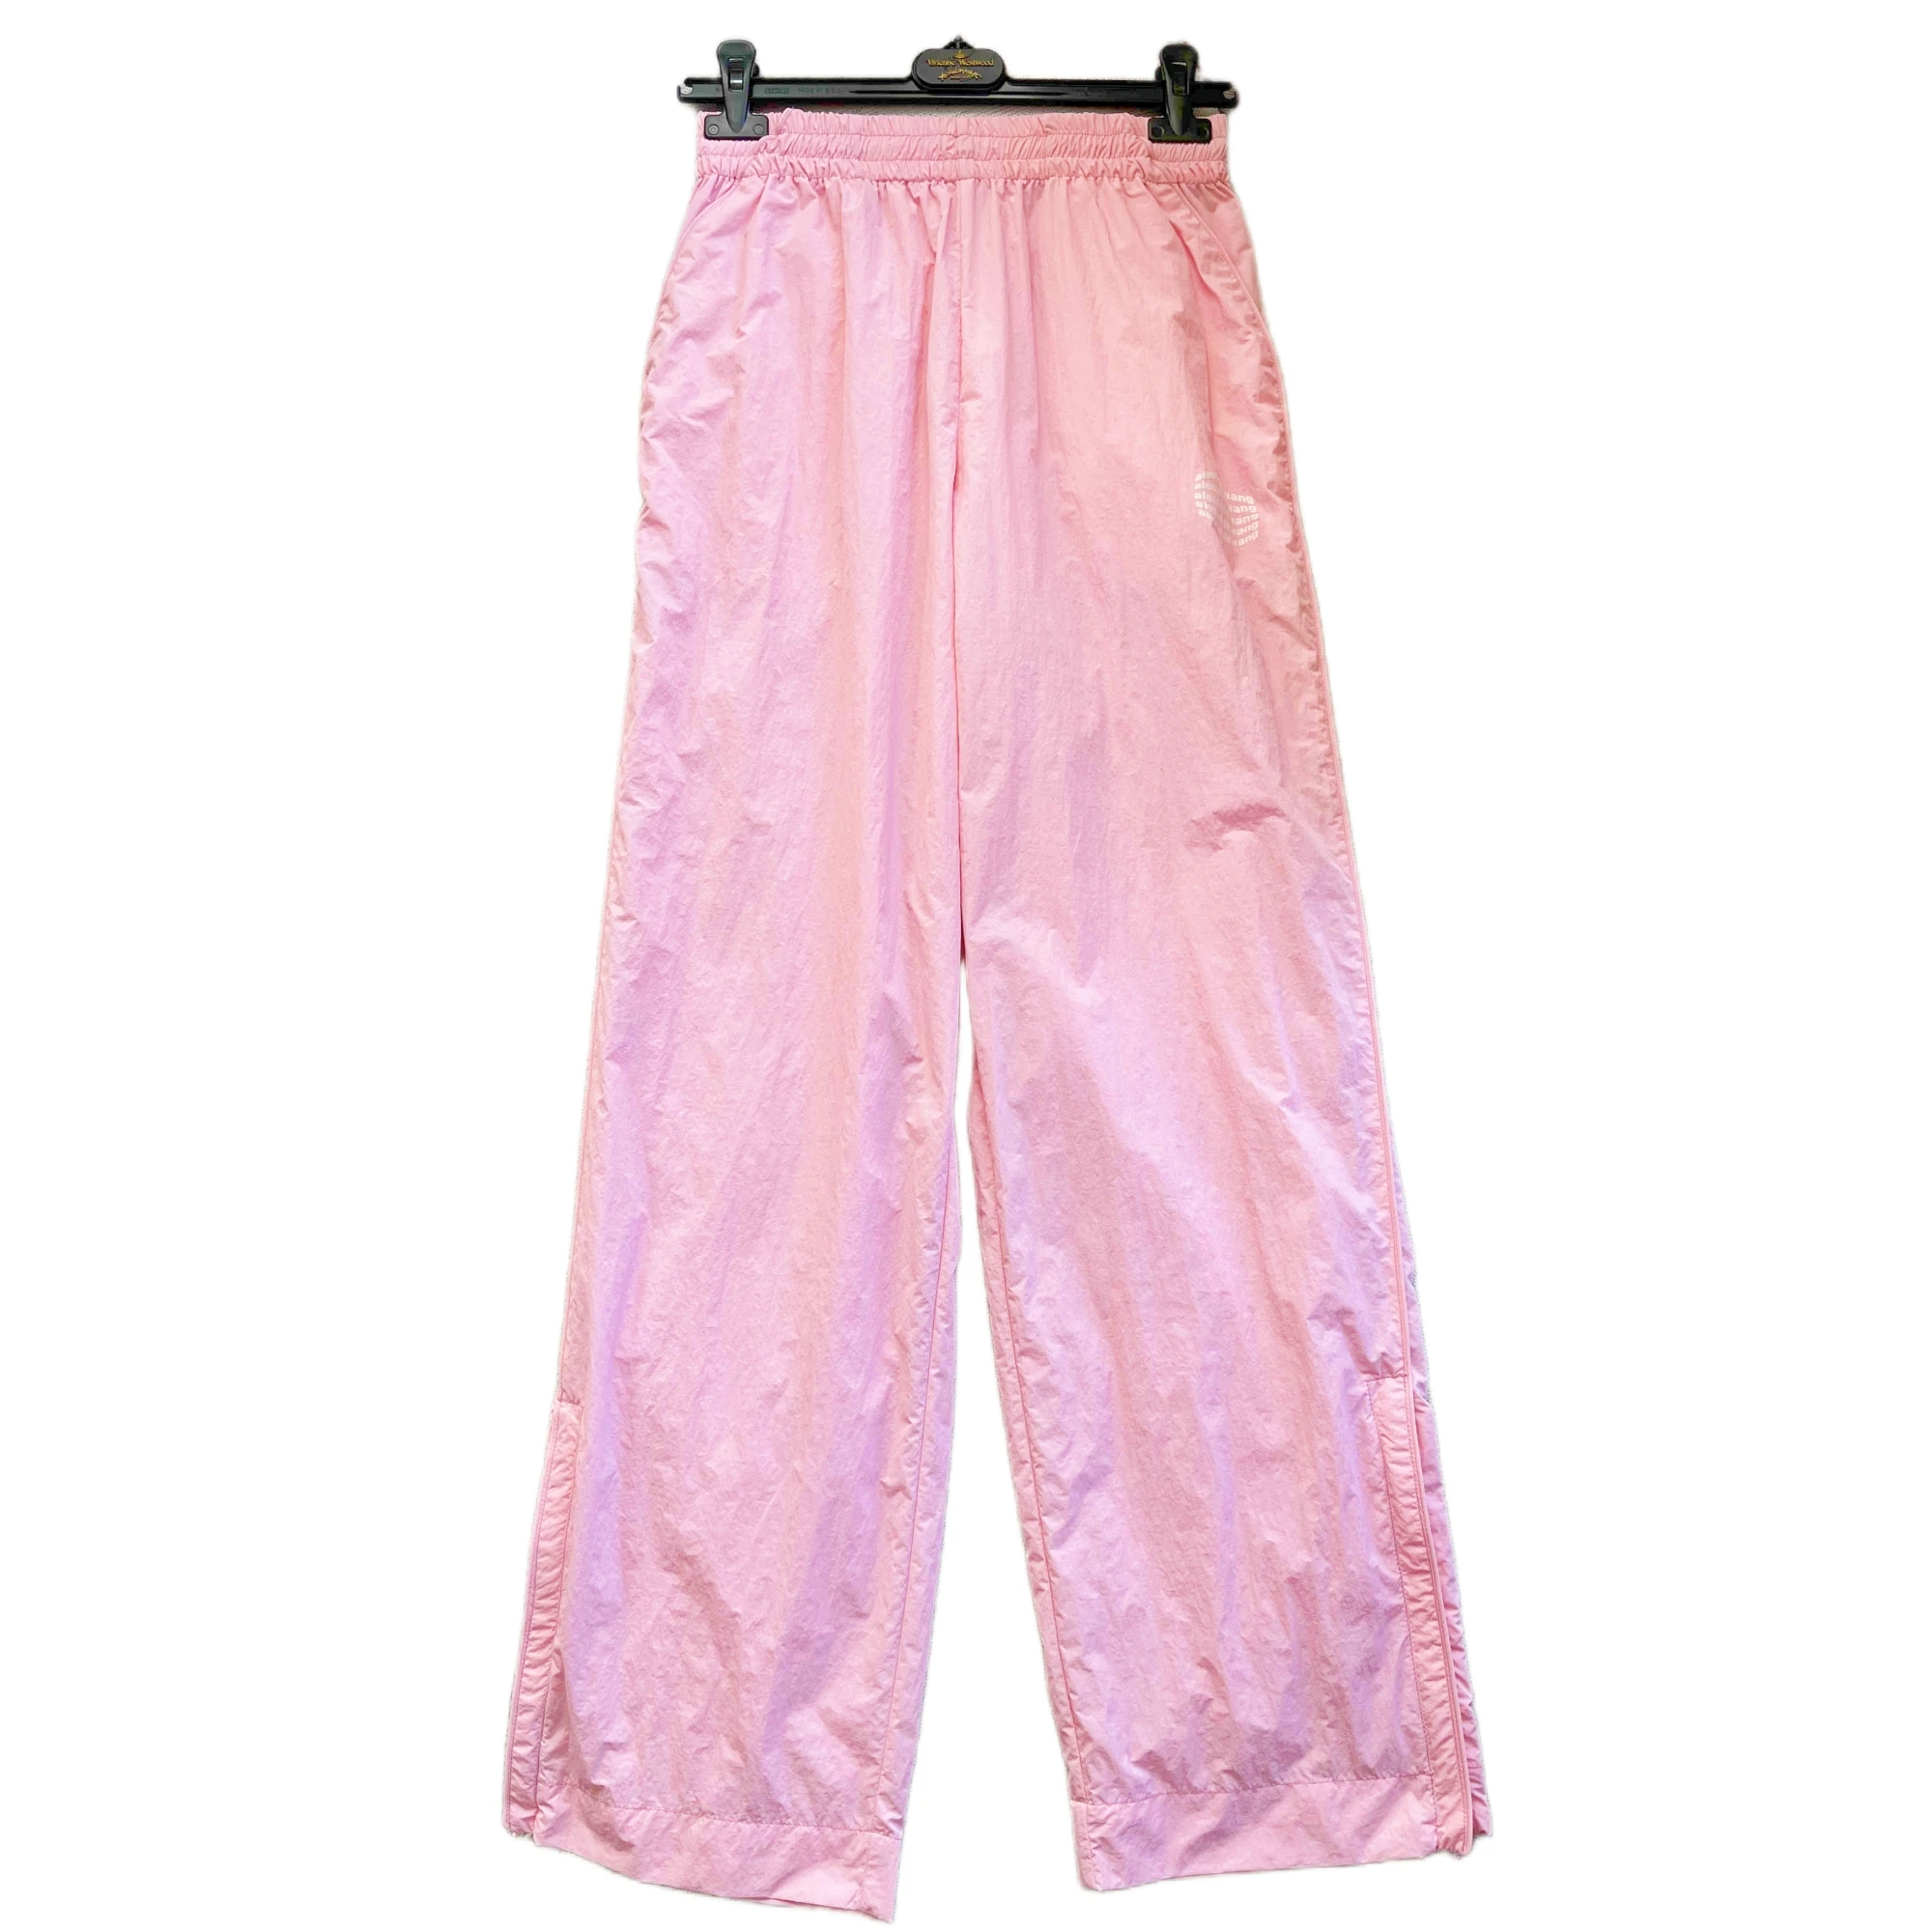 Megeara, Модные брюки, женские, розовый, черный цвет, полиэстер, длинные Свободные уличные брюки на шнурке